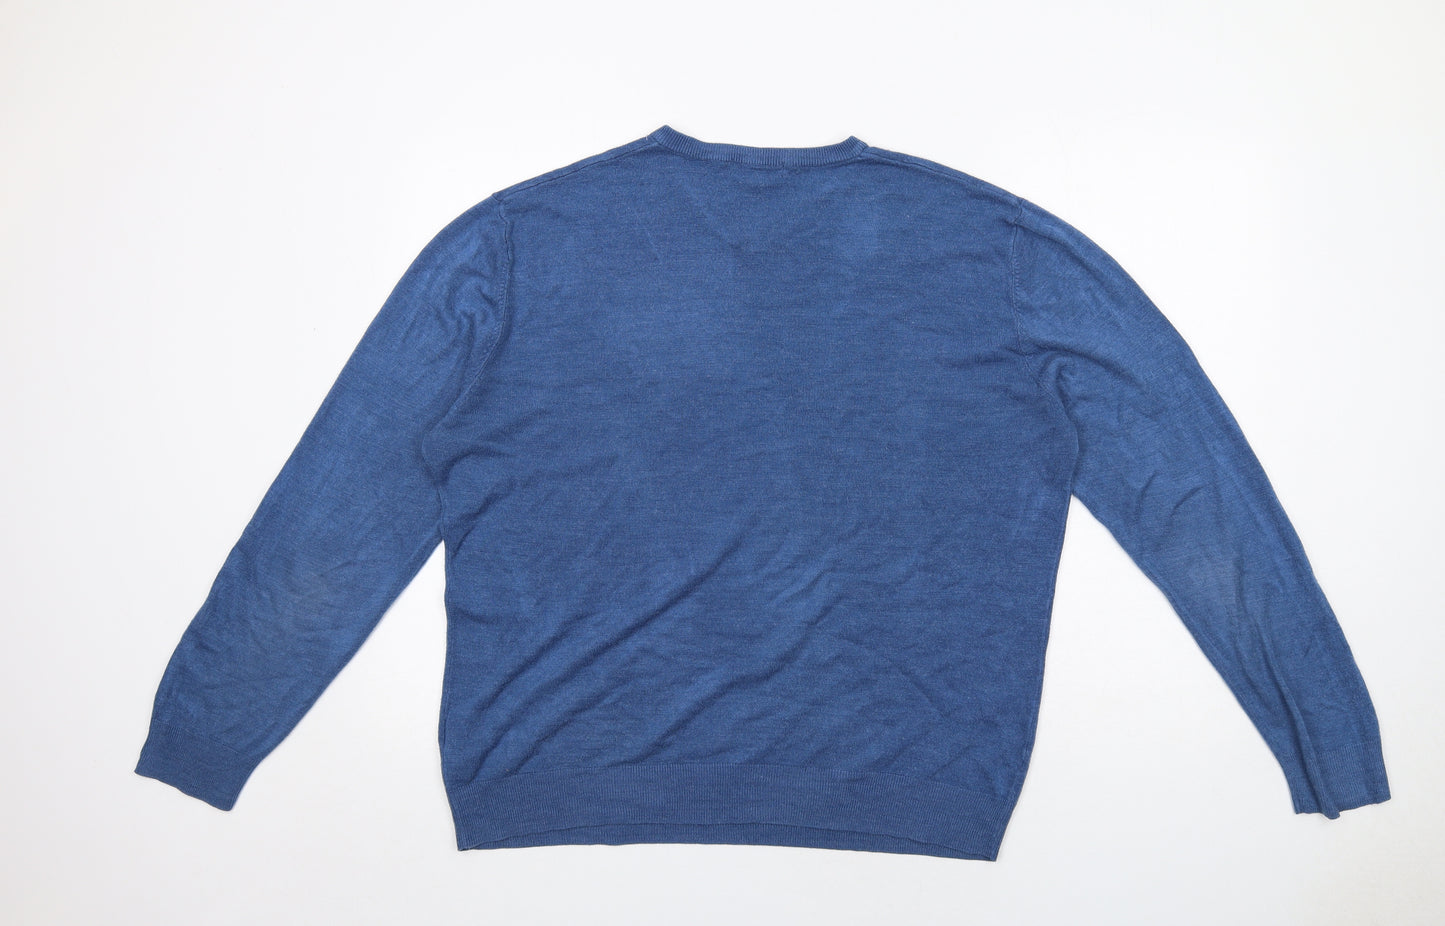 Debenhams Mens Blue V-Neck Acrylic Pullover Jumper Size XL Long Sleeve